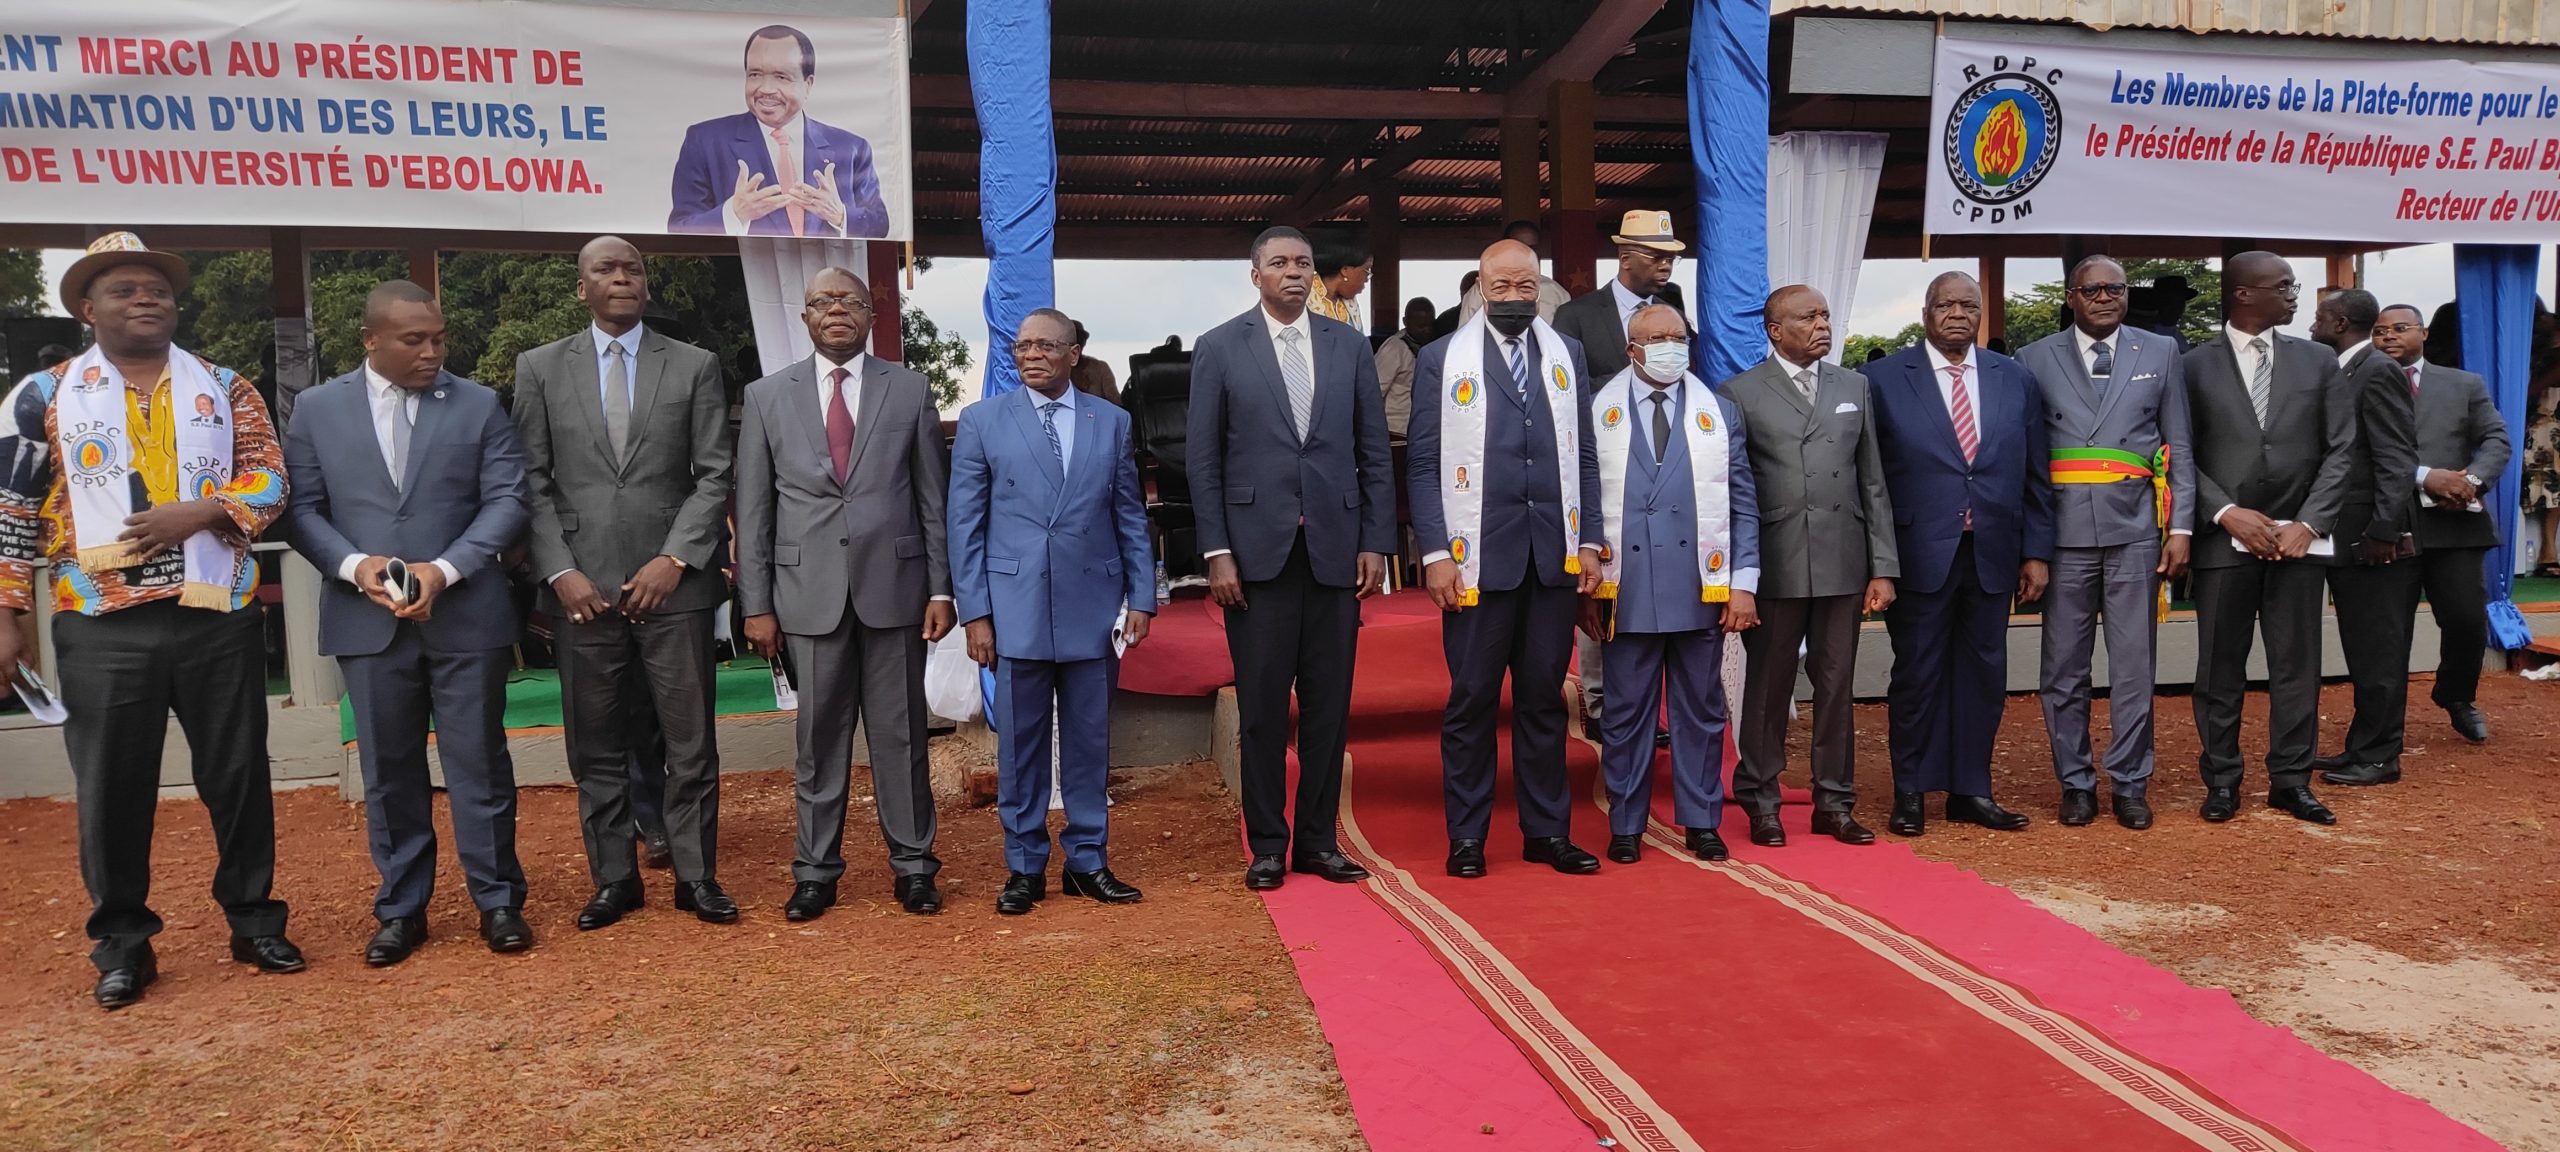 Région de l’Est Cameroun : Les élites contre ou pour le développement ?  D’André Marie Mbida au Président Paul Biya, l’histoire des élites de la région de l’Est Cameroun fait apparaître une constante.